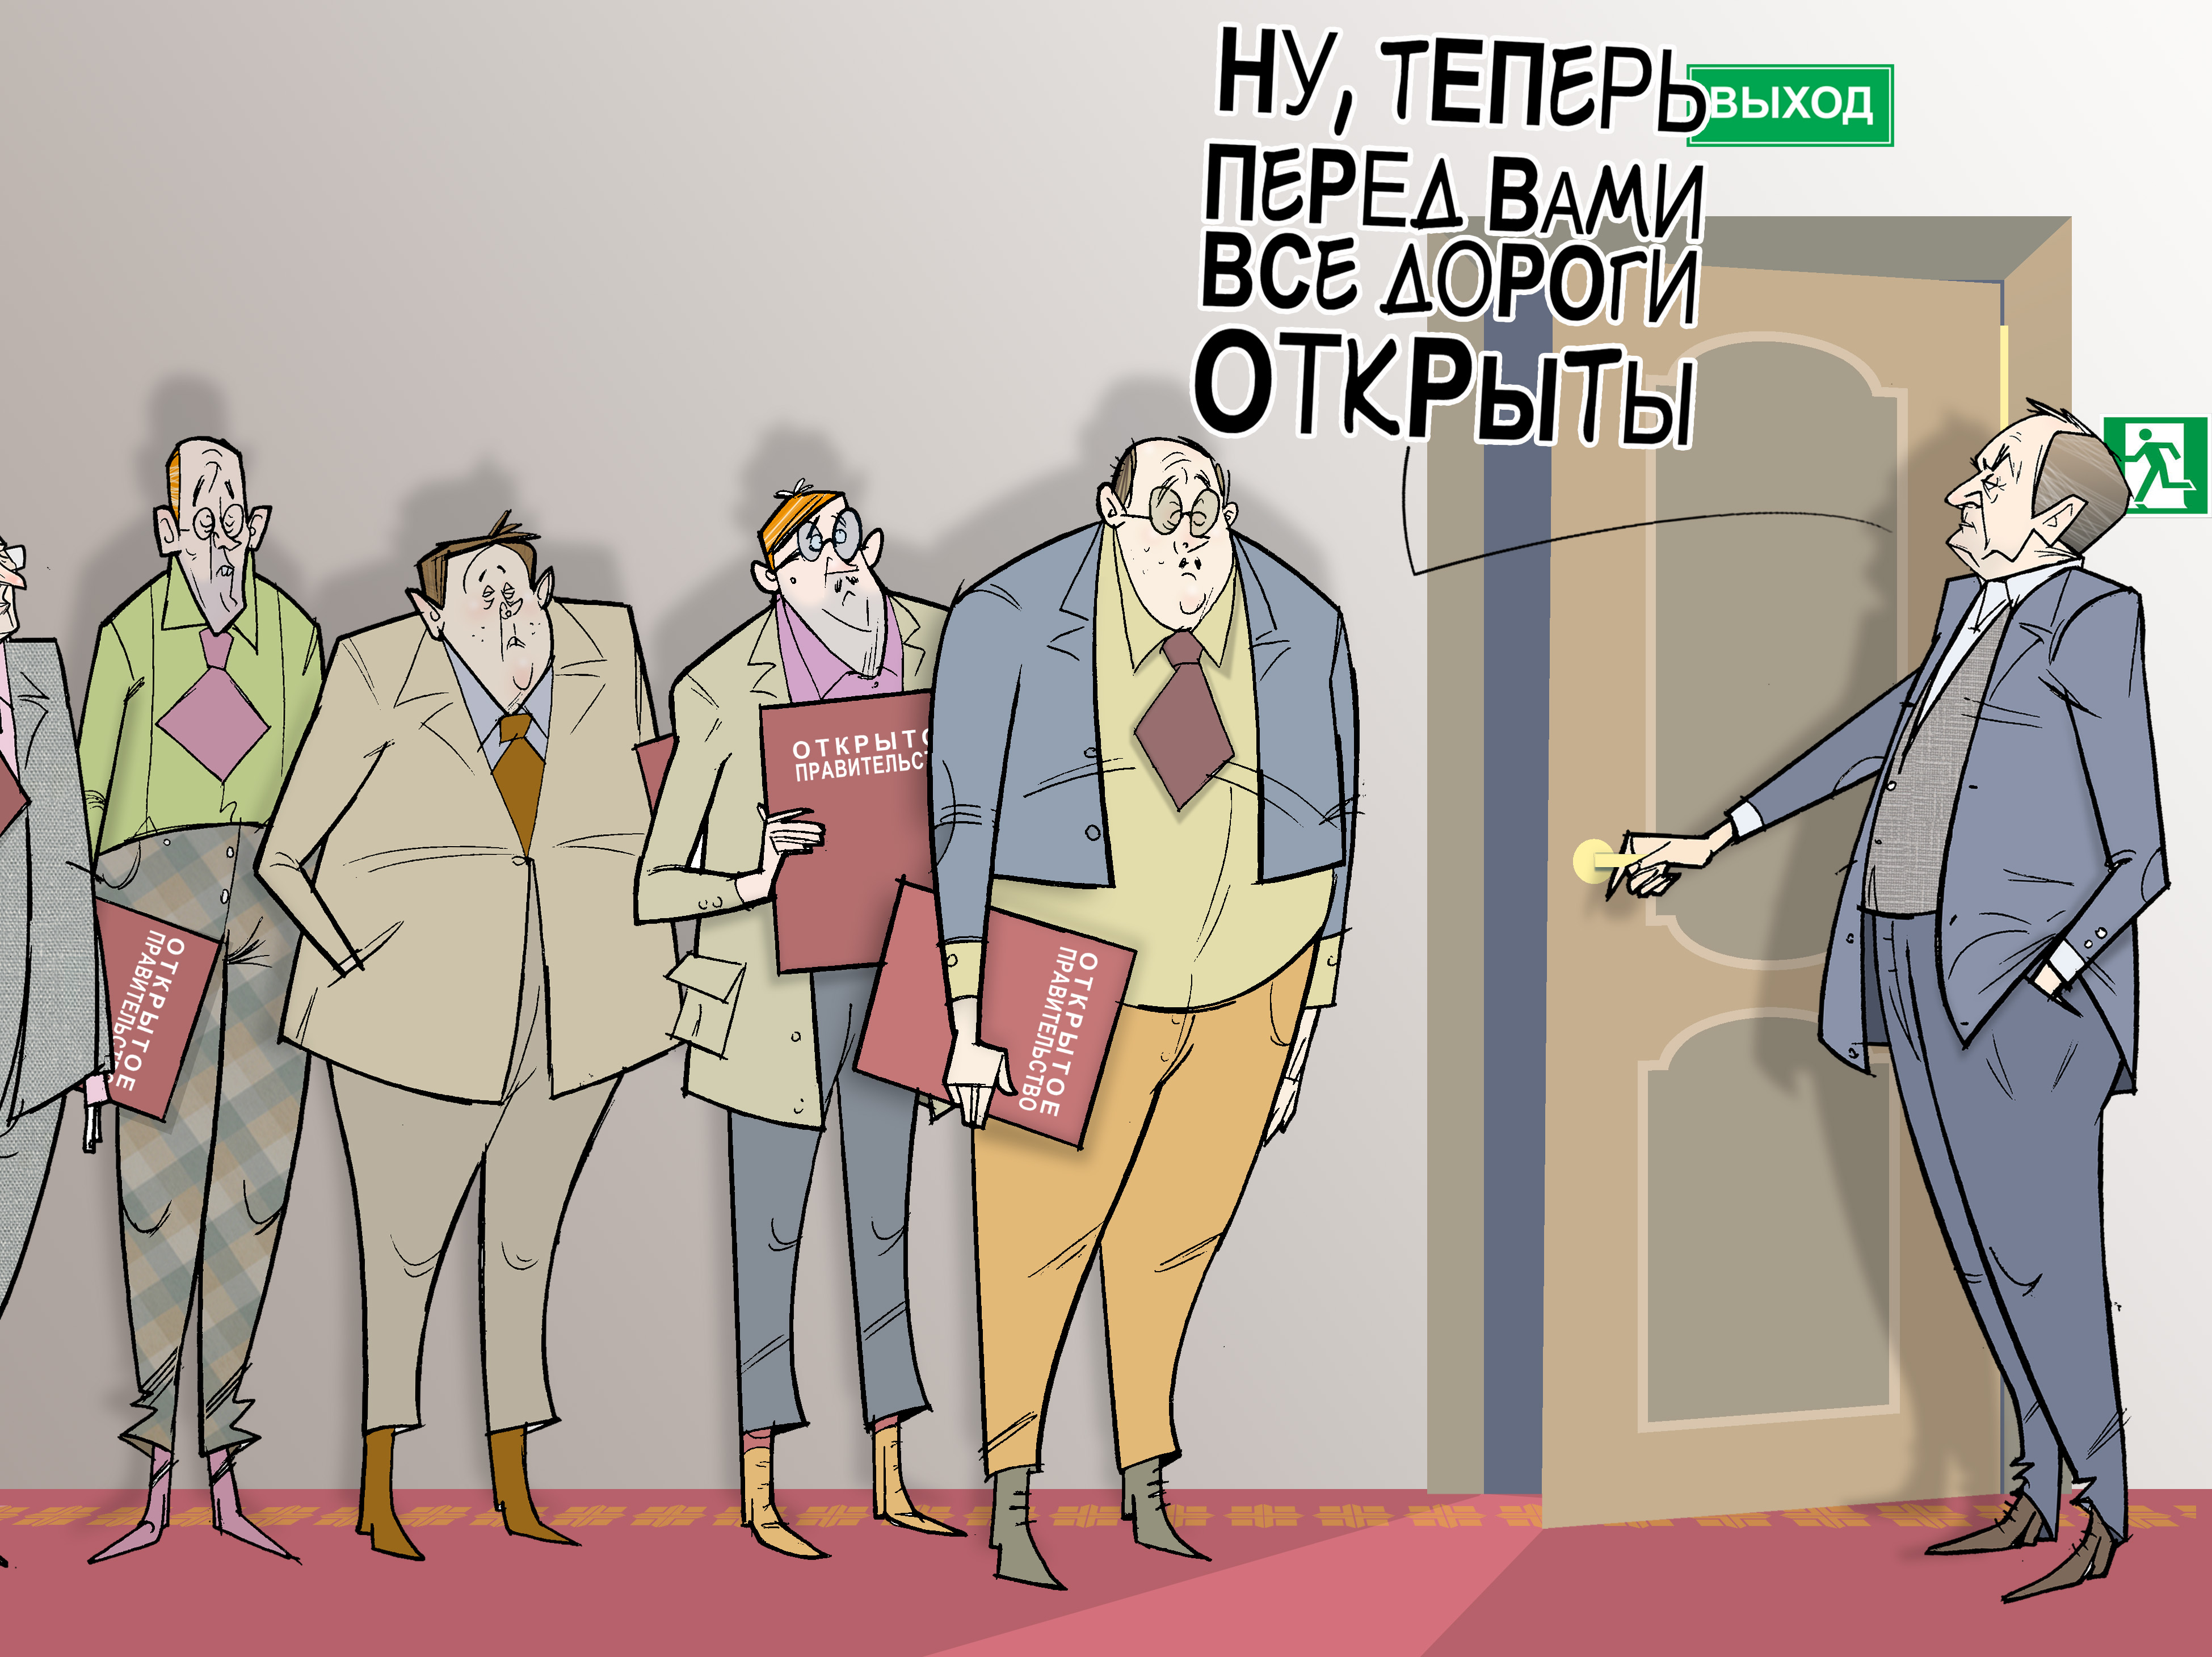 Все дороги открыты. #ОткрытоеПравительство #Удмуртия #ГлаваУР #Соловьёв © Газета "День" 2014